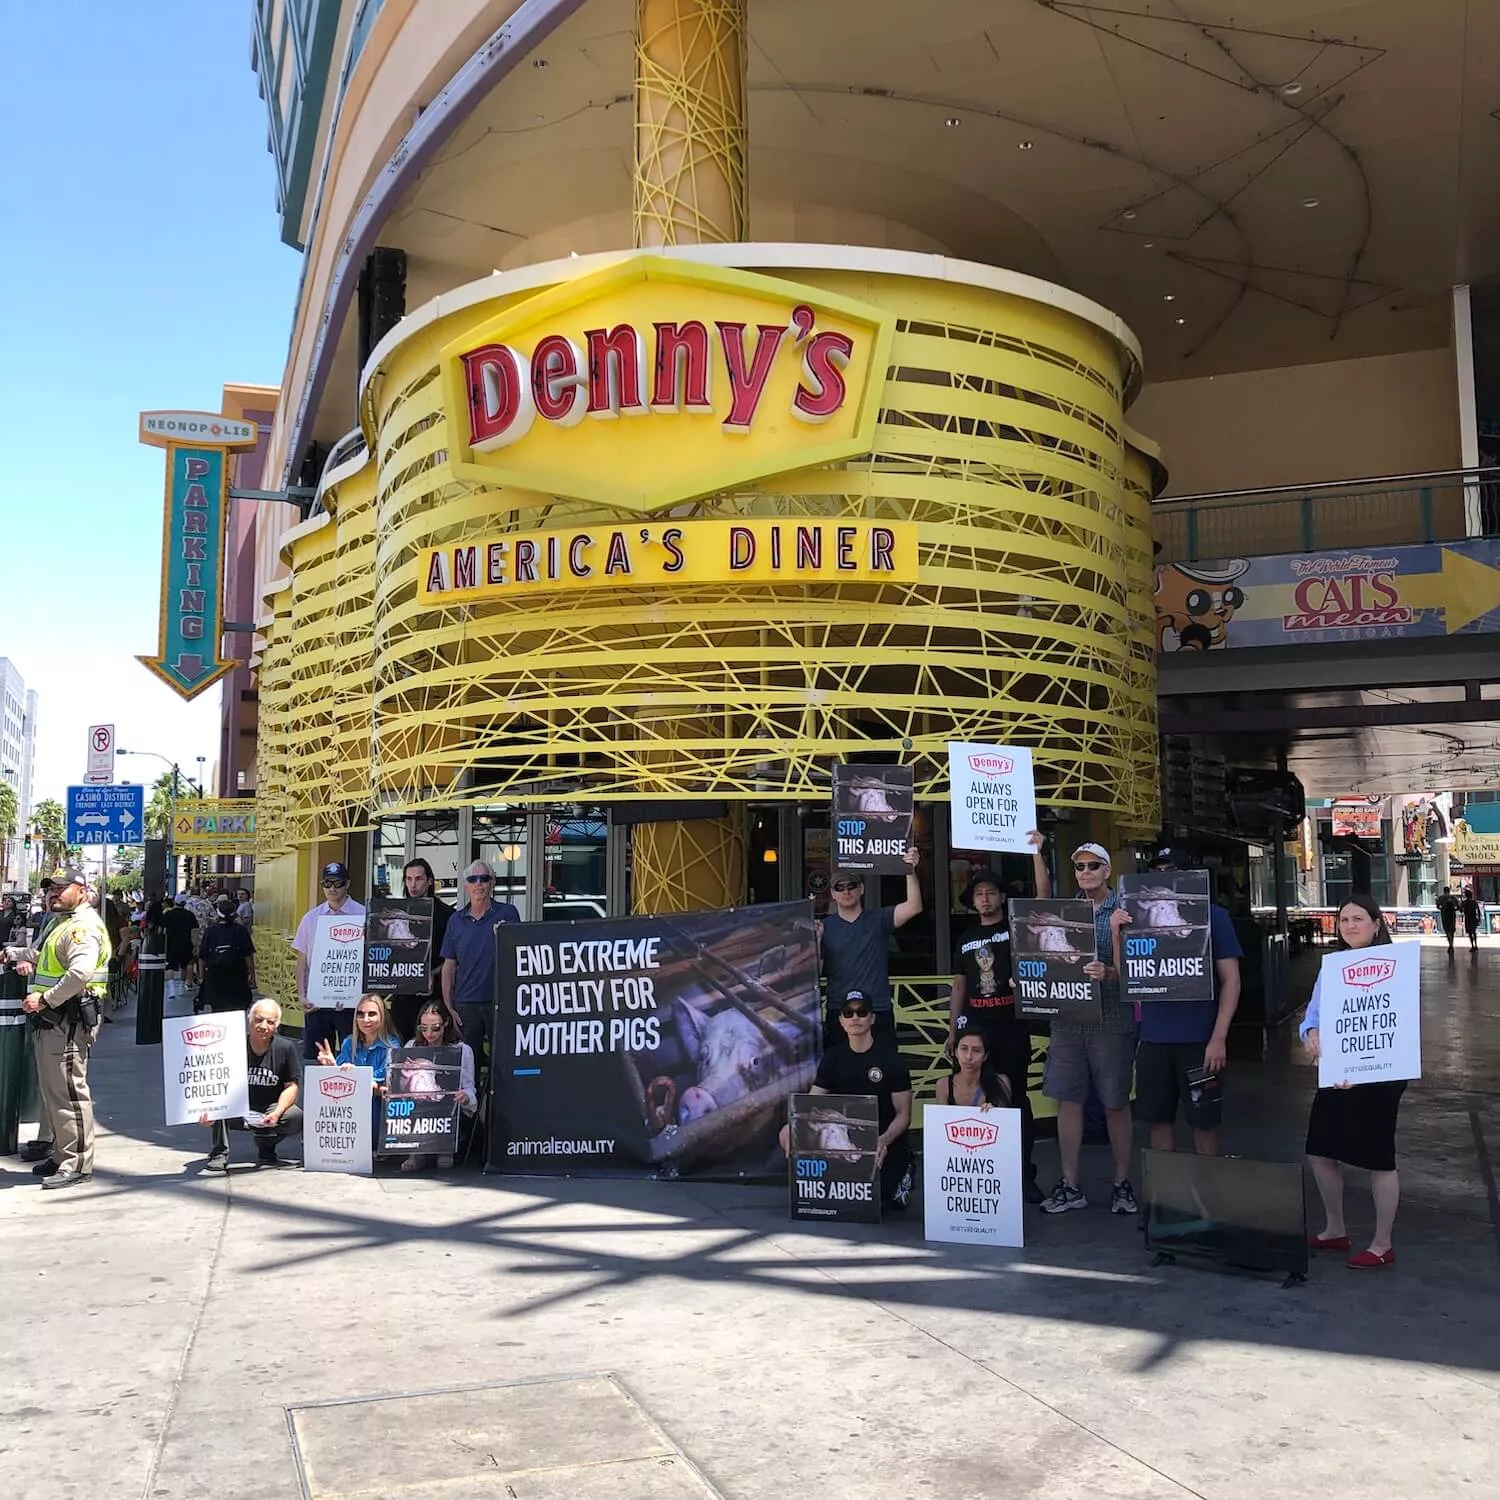 Voluntarios de Igualdad Animal protestando fuera de un restaurante Denny's en Las Vegas, con carteles y pancartas.